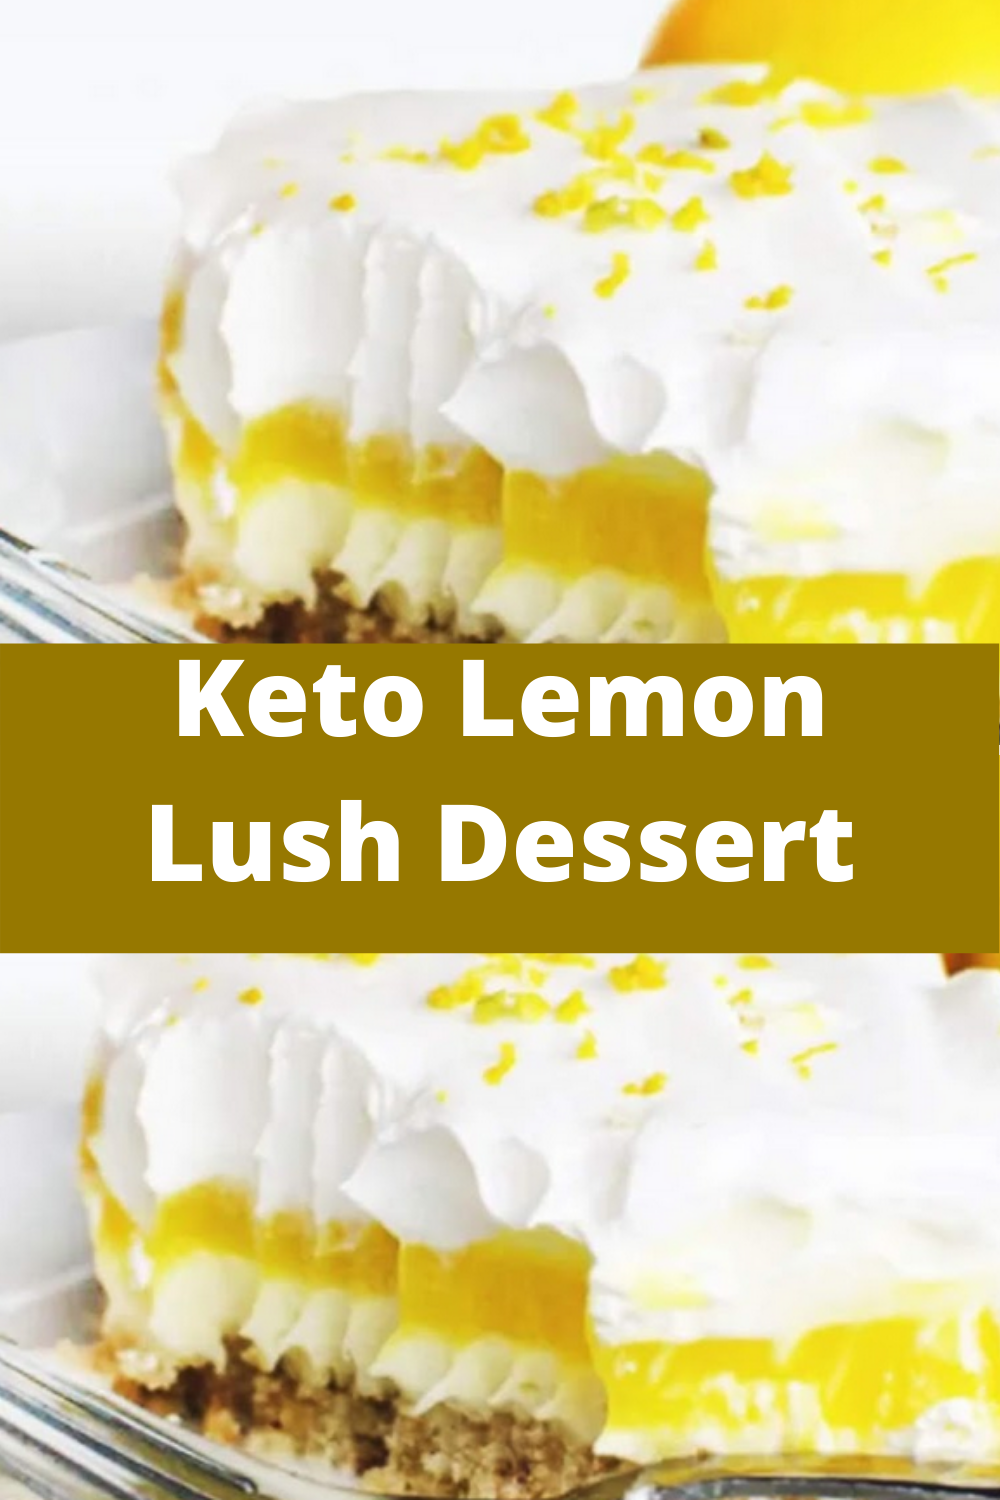 Keto Lemon Lush Dessert - Recipes Easy